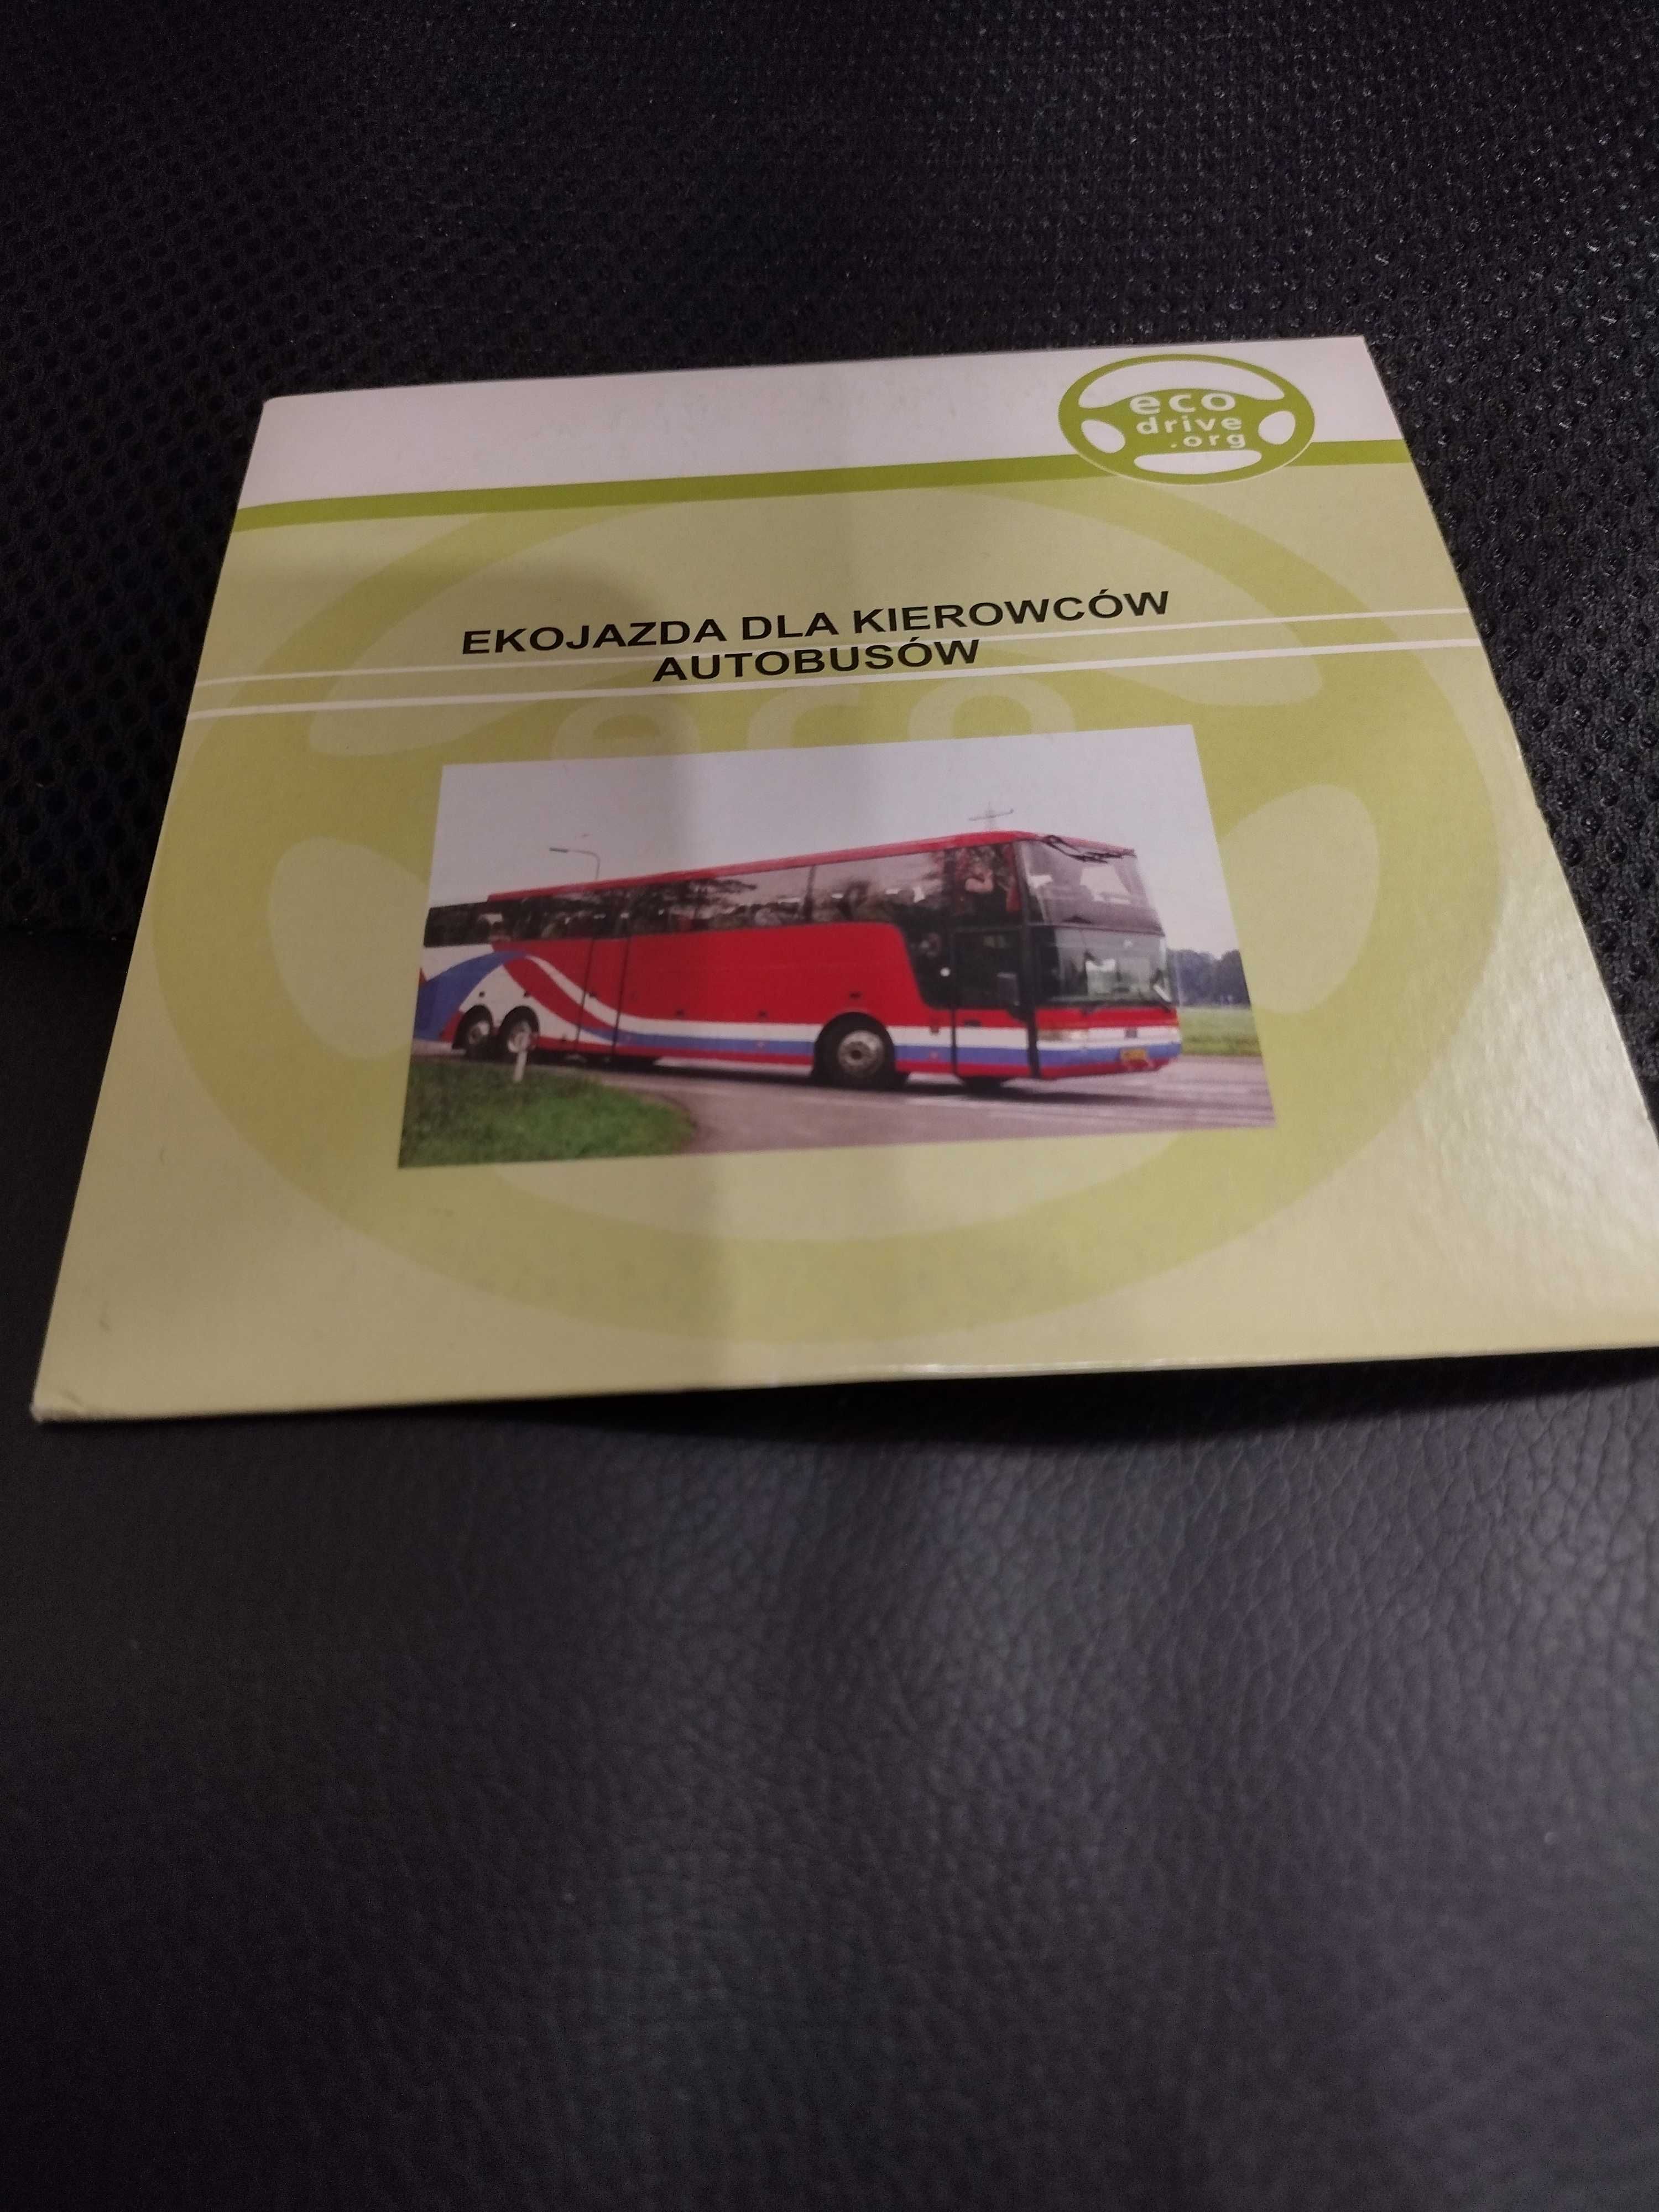 Ekojazda dla kierowców samochodów autobusów